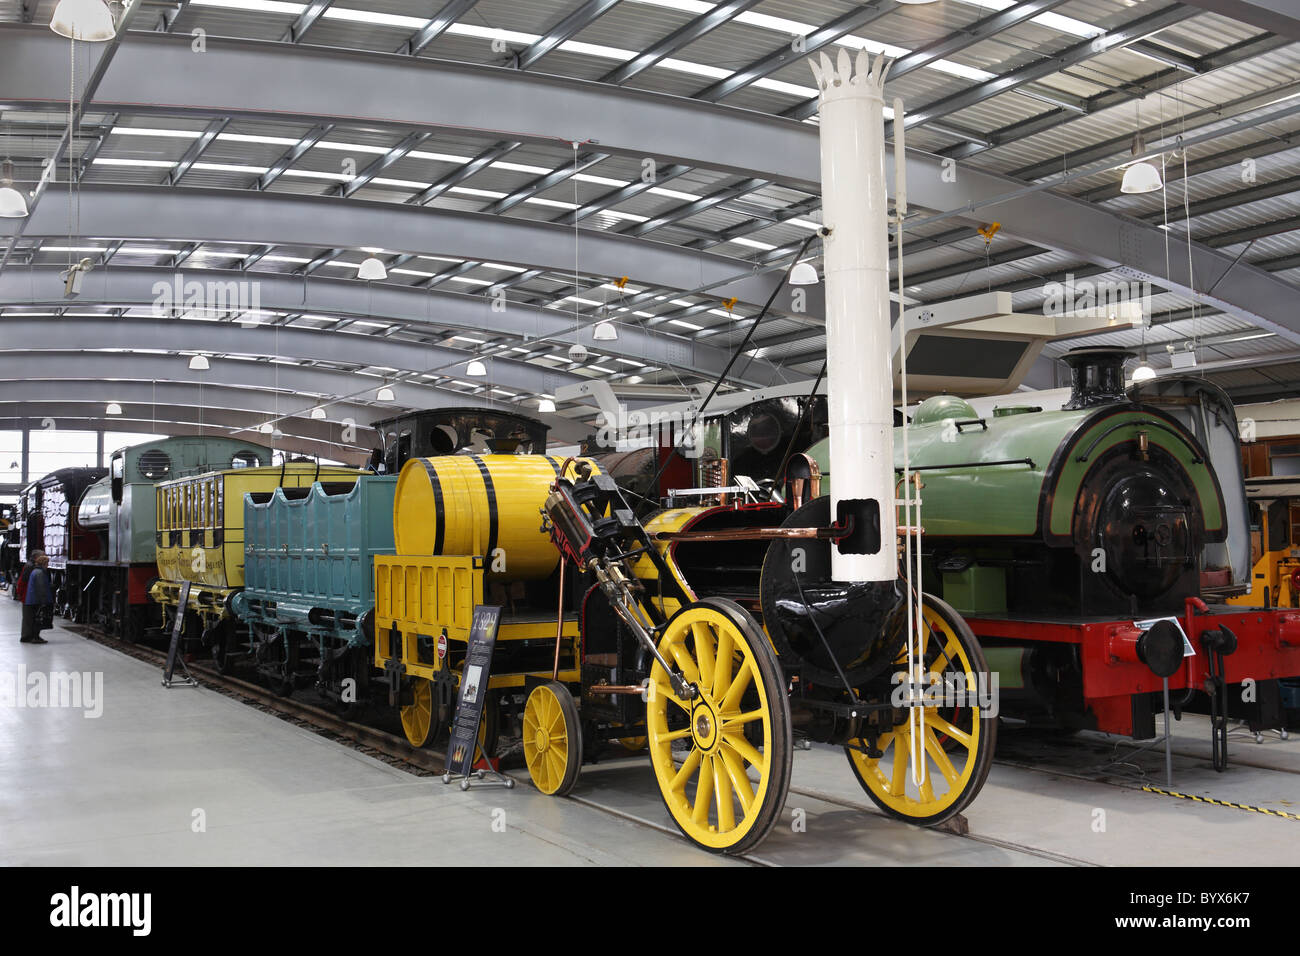 La réplique Rocket locomotive à vapeur et train, NRM Shildon Locomotion, au Nord Est de l'Angleterre. Banque D'Images